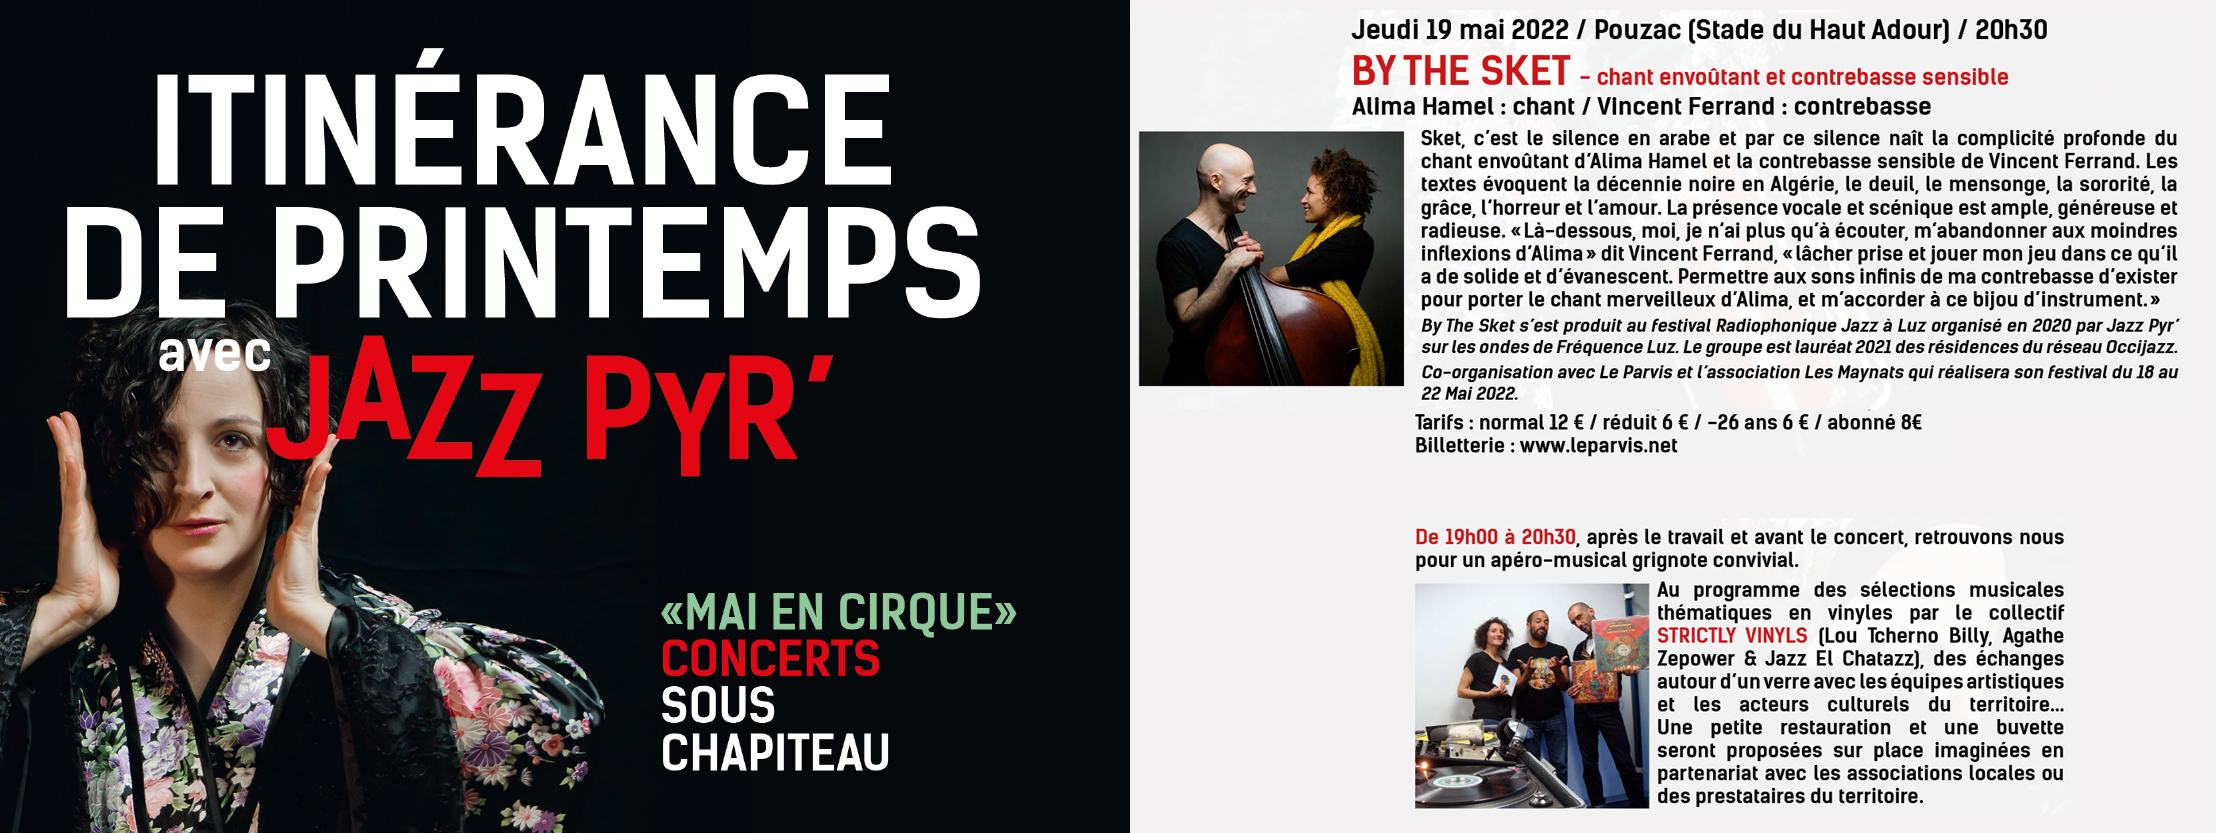 soirée concert du 19/05 en partenariat avec Les Maynats, Le parvis et Jazz Pyr’.